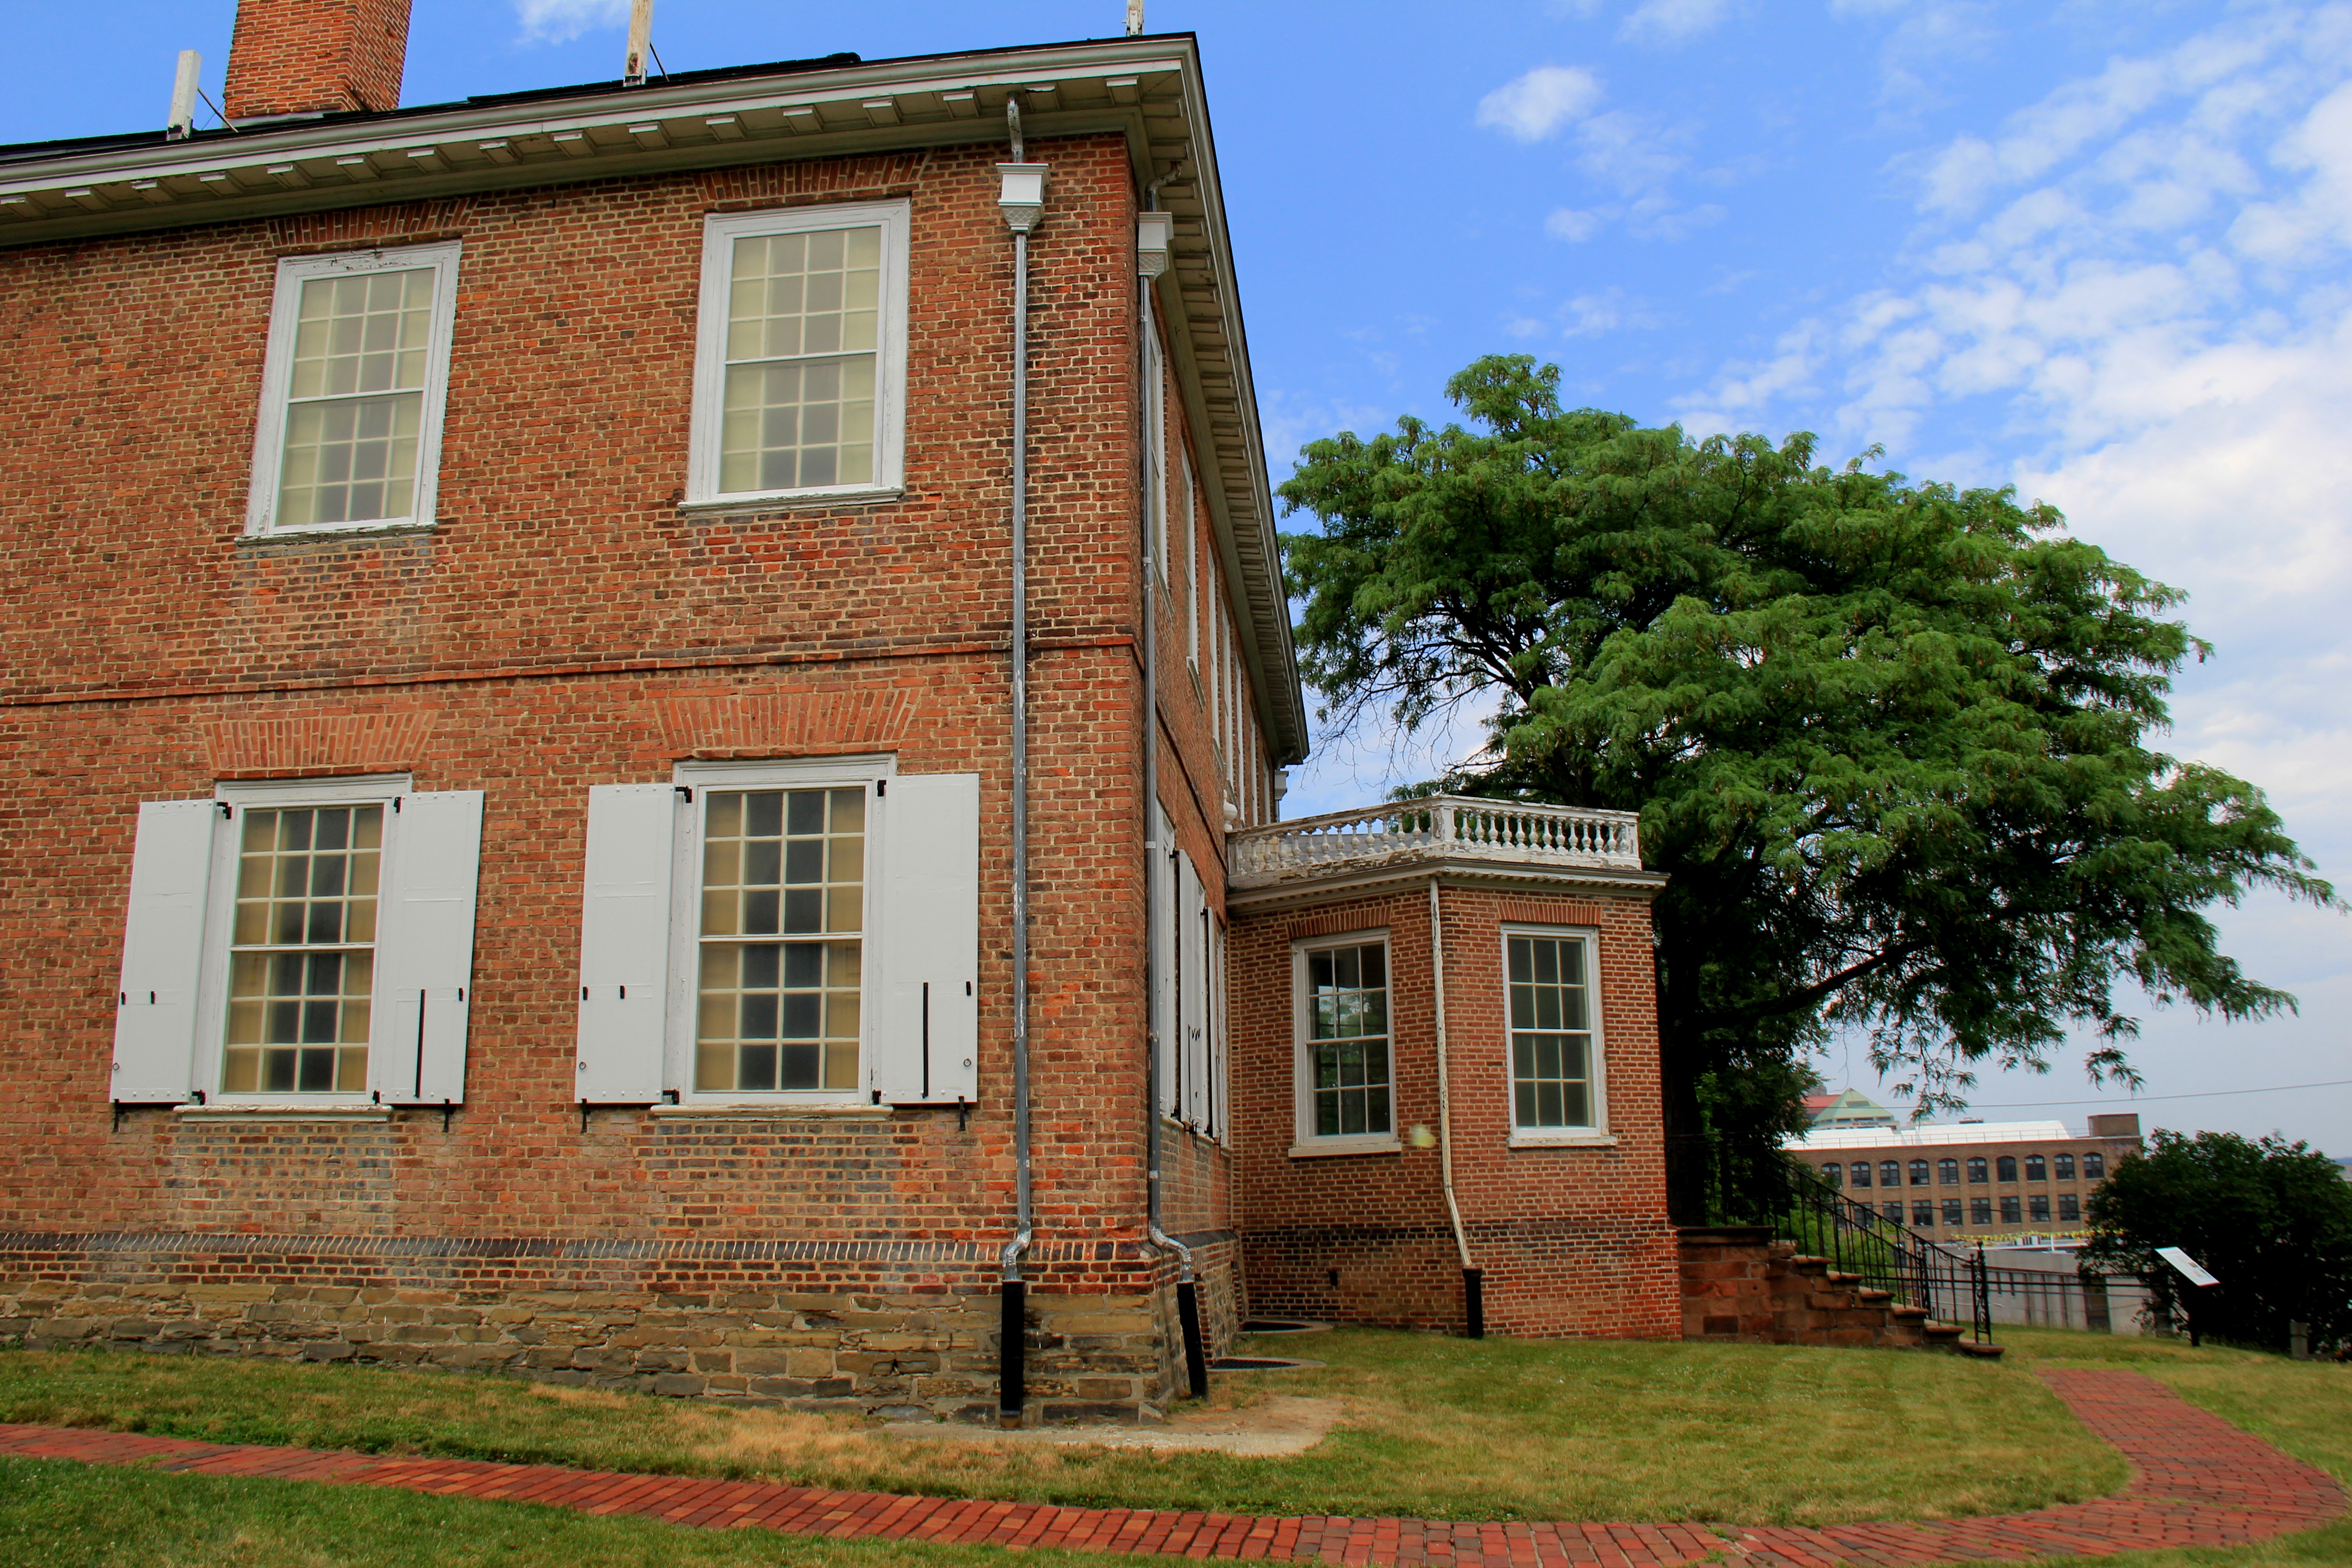 Schuyler Mansion - side view